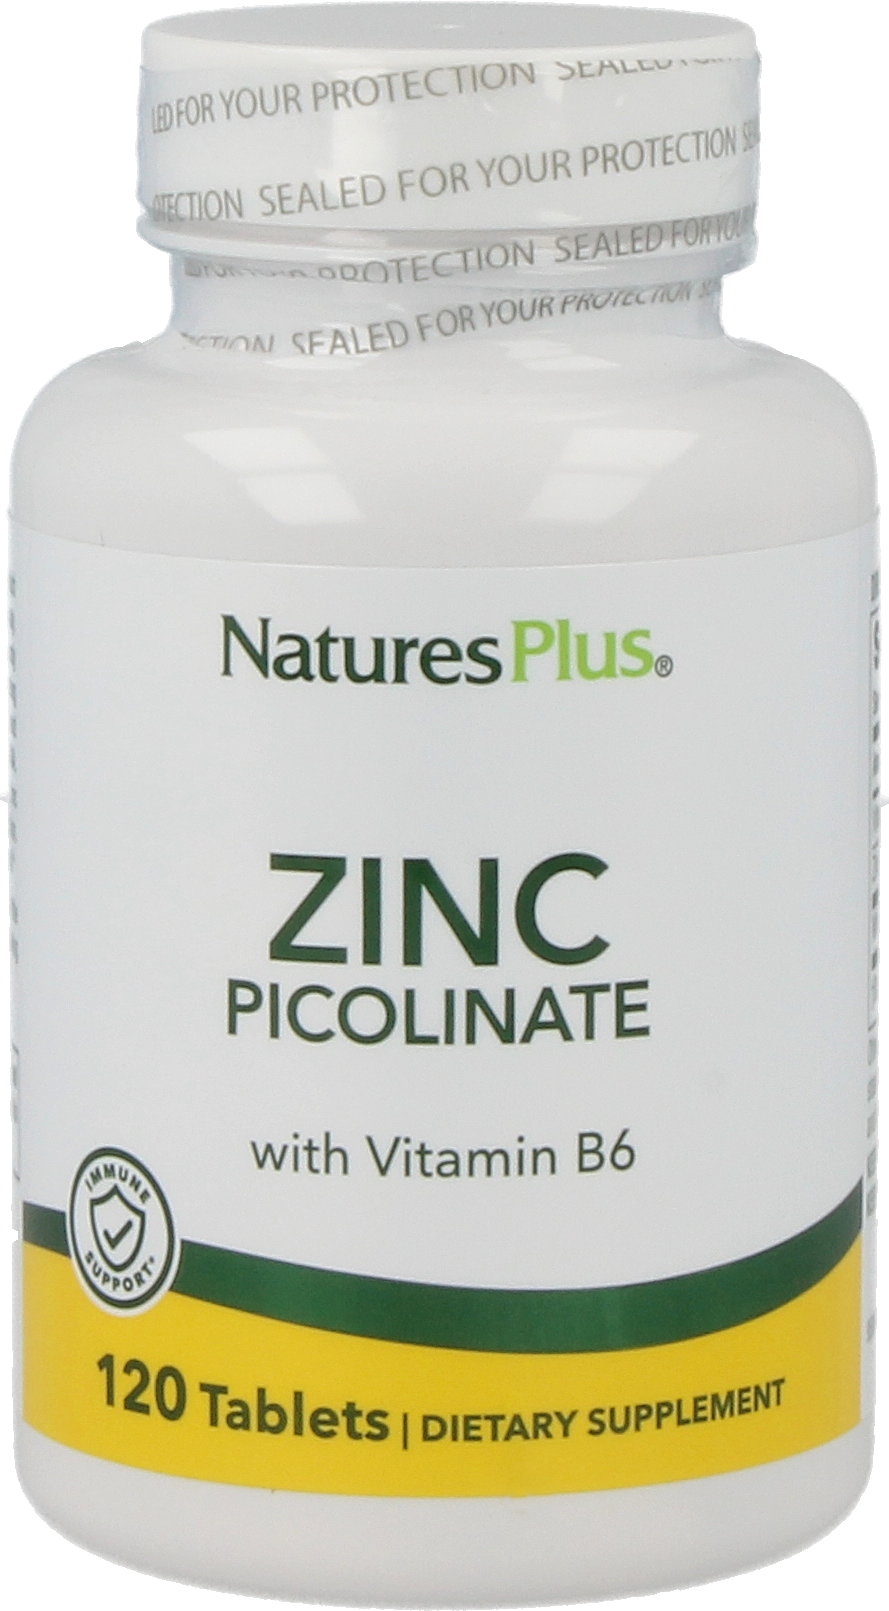 Zinc Picolinate with Vitamin B6 